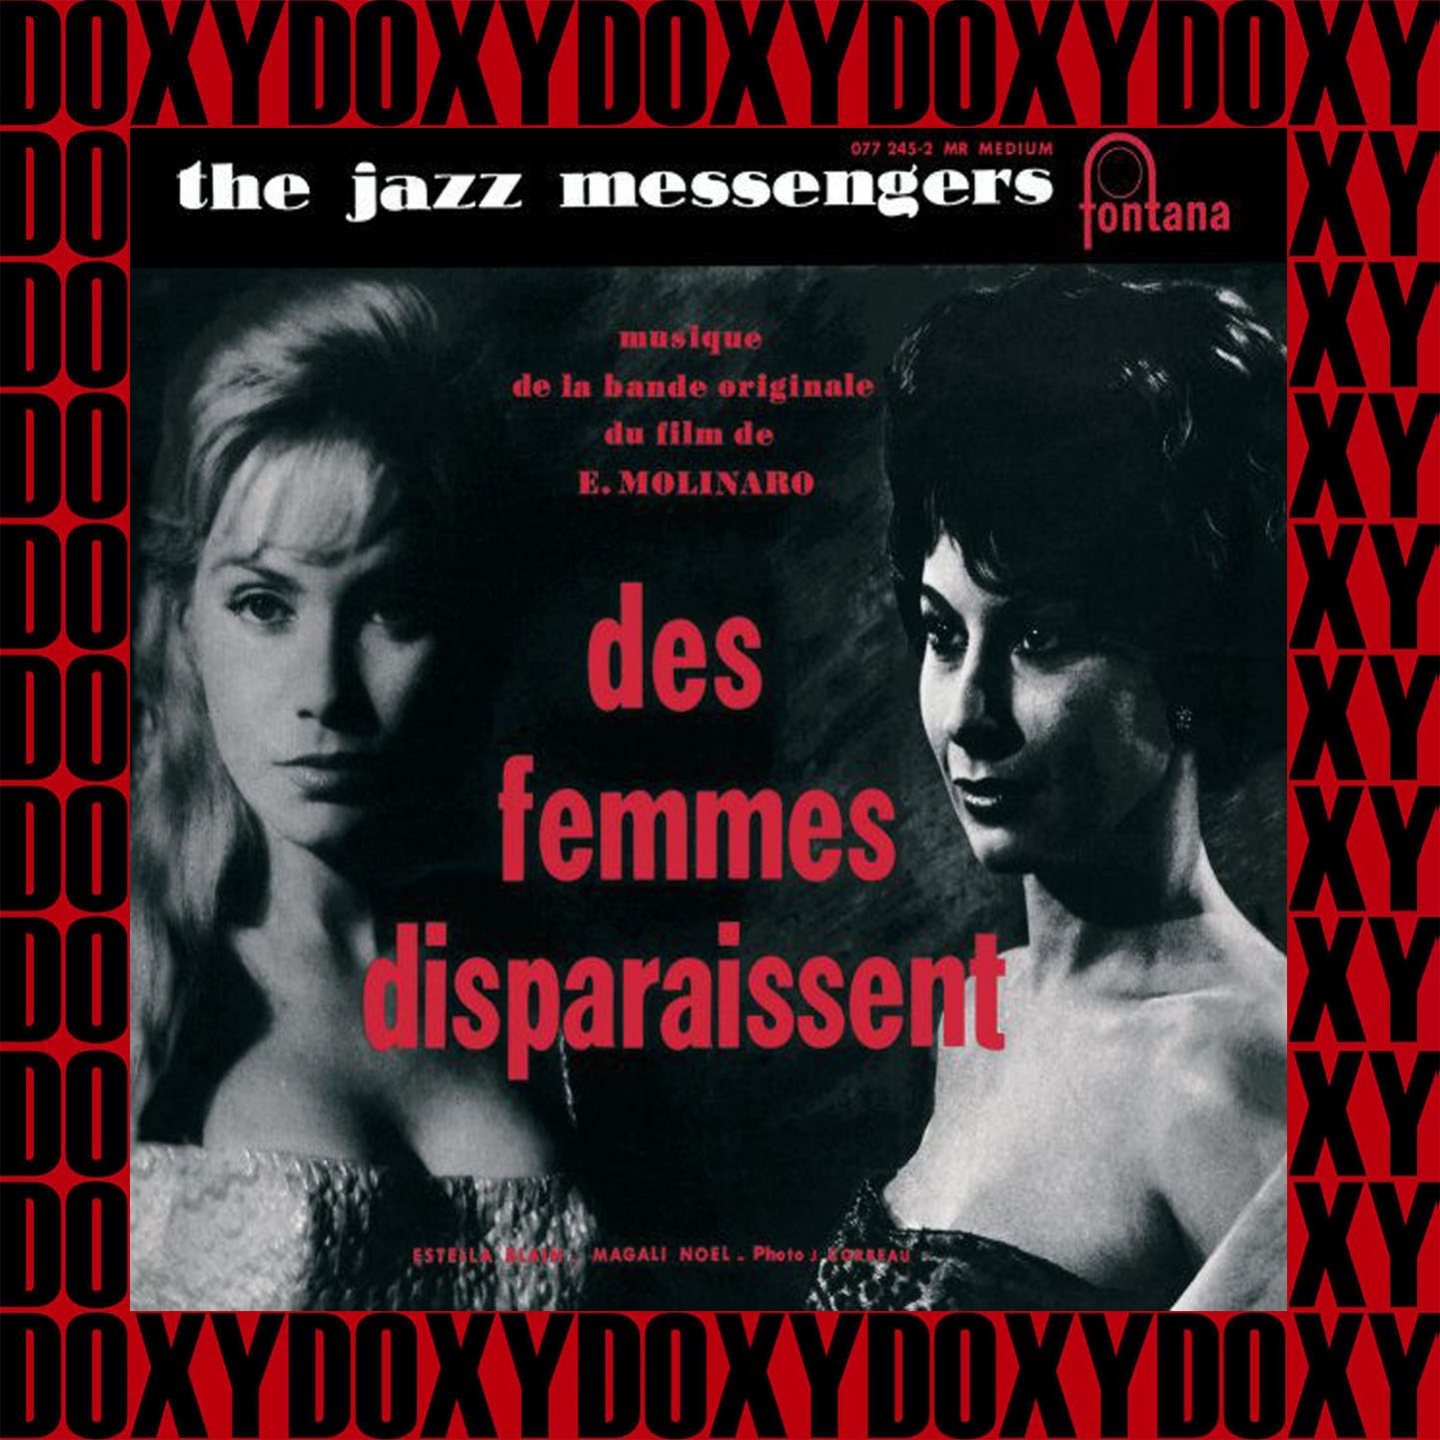 Des Femmes Disparaissent, Les Tricheurs, Original Soundtracks (Remastered Version) (Doxy Collection)